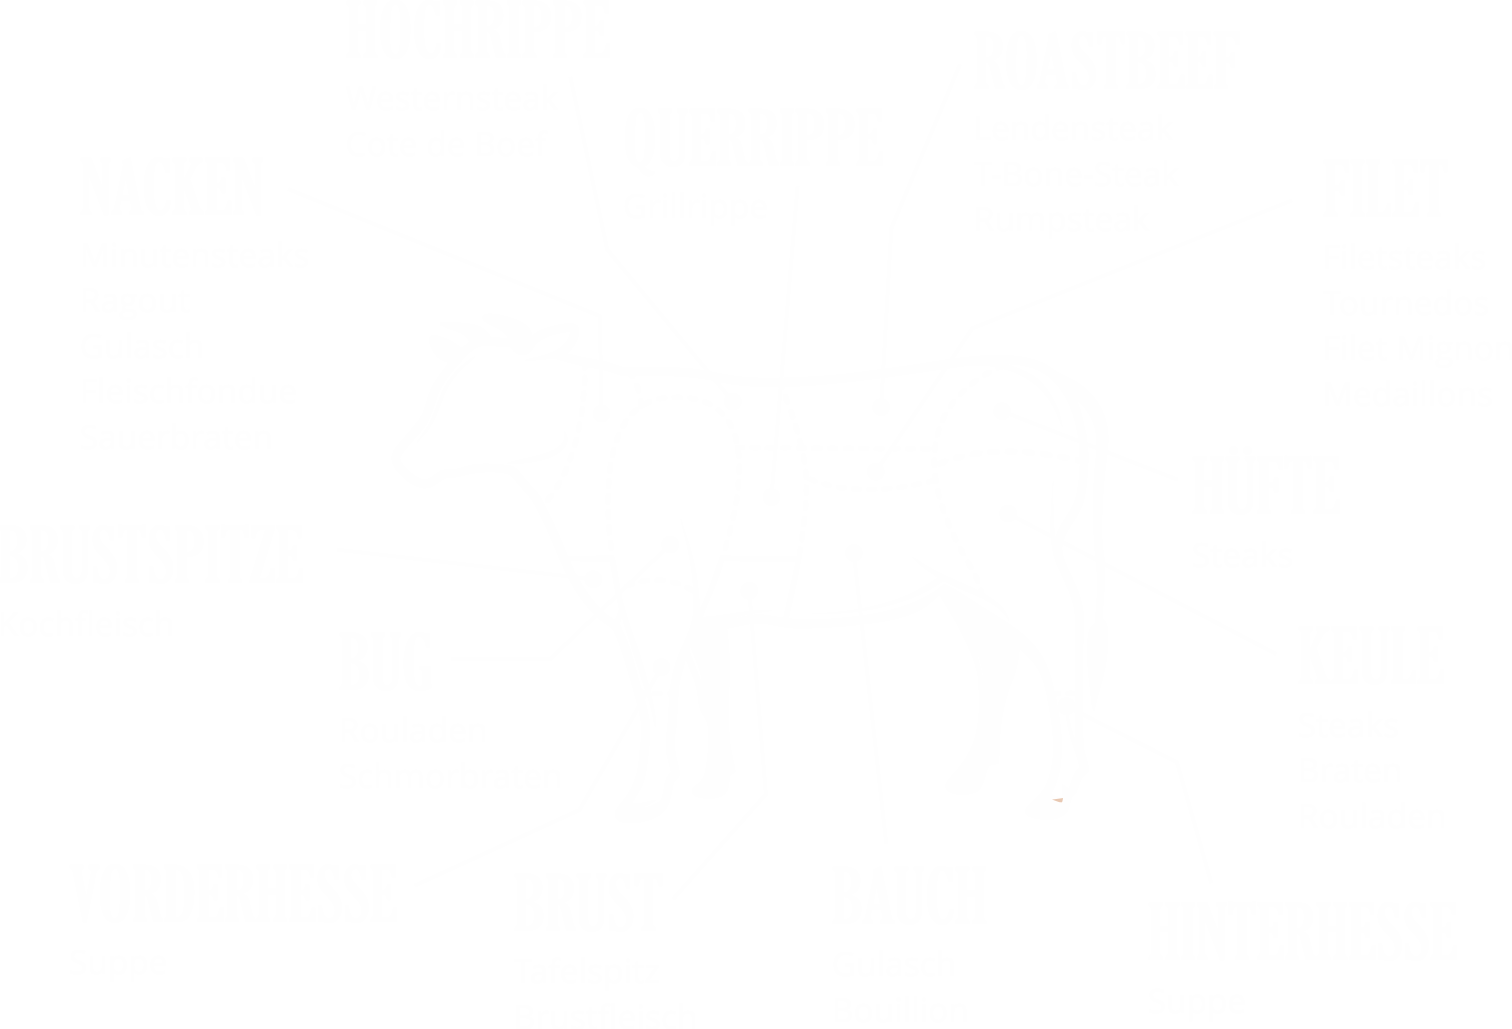 Teilstücke des Rindfleischs